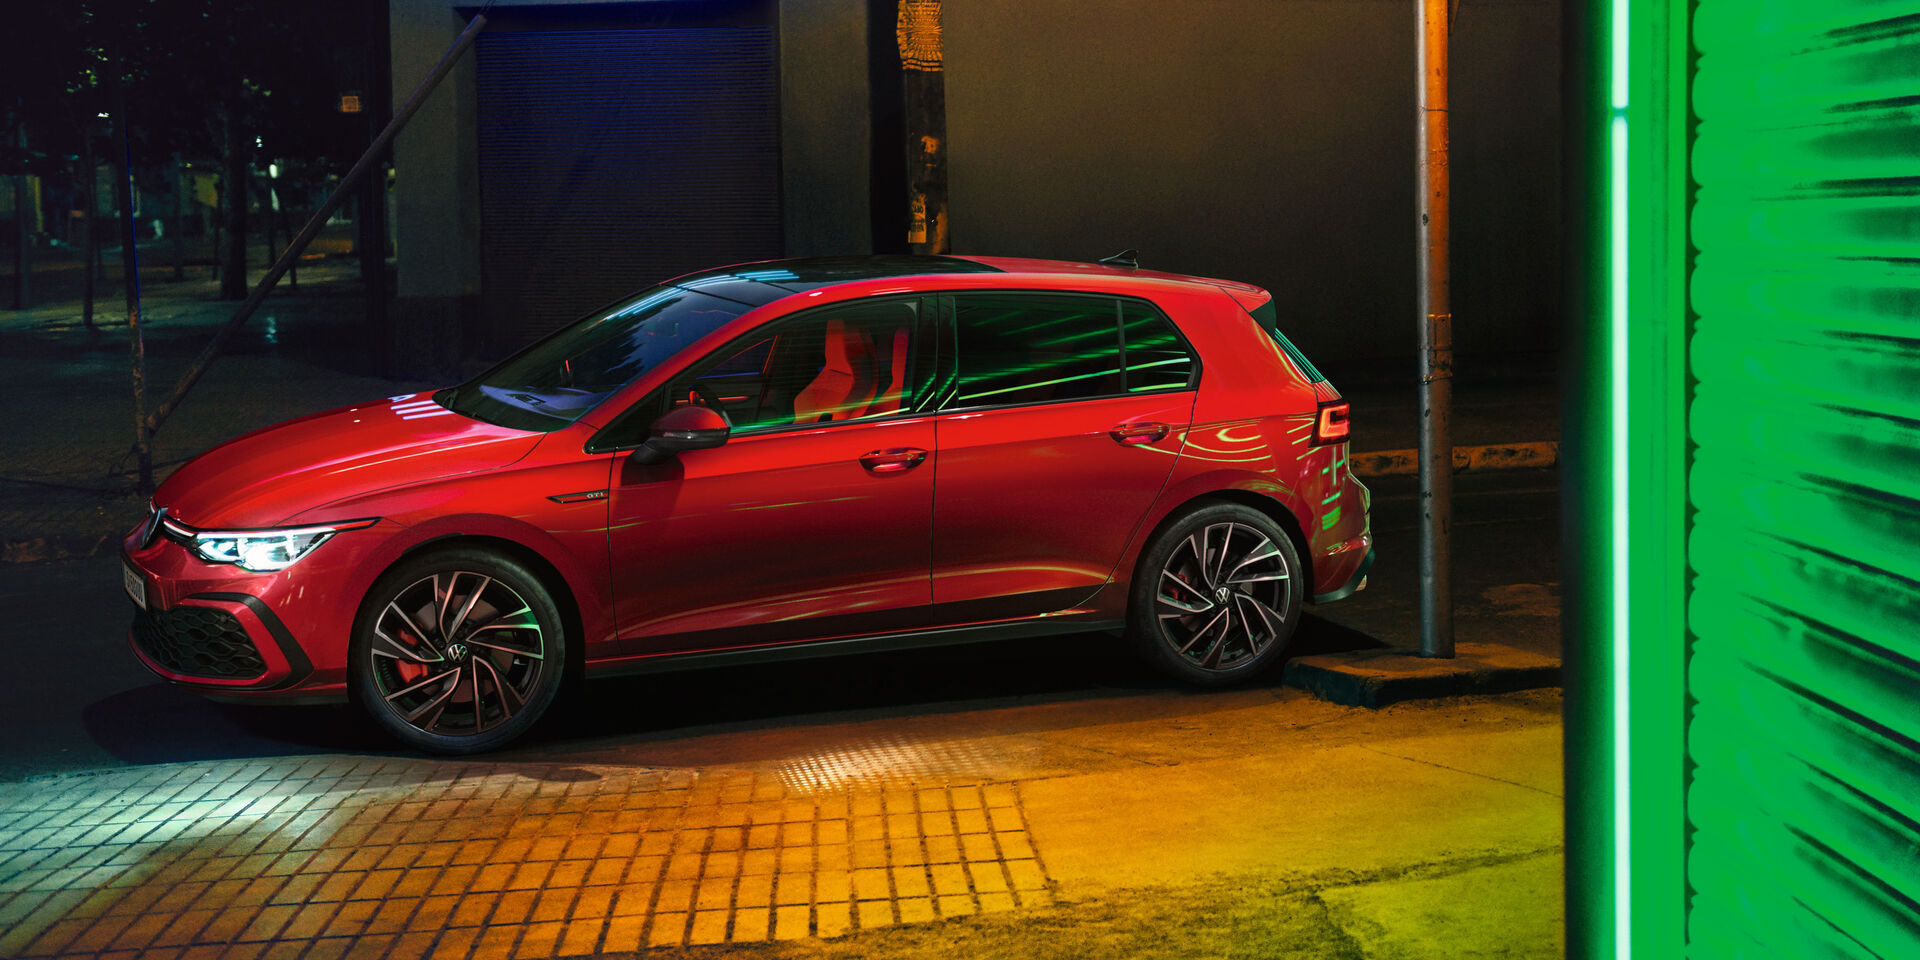  VW Golf GTI, em vermelho, vista lateral, com faróis brilhantes IQ.Light, iluminação ambiente exterior brilhante